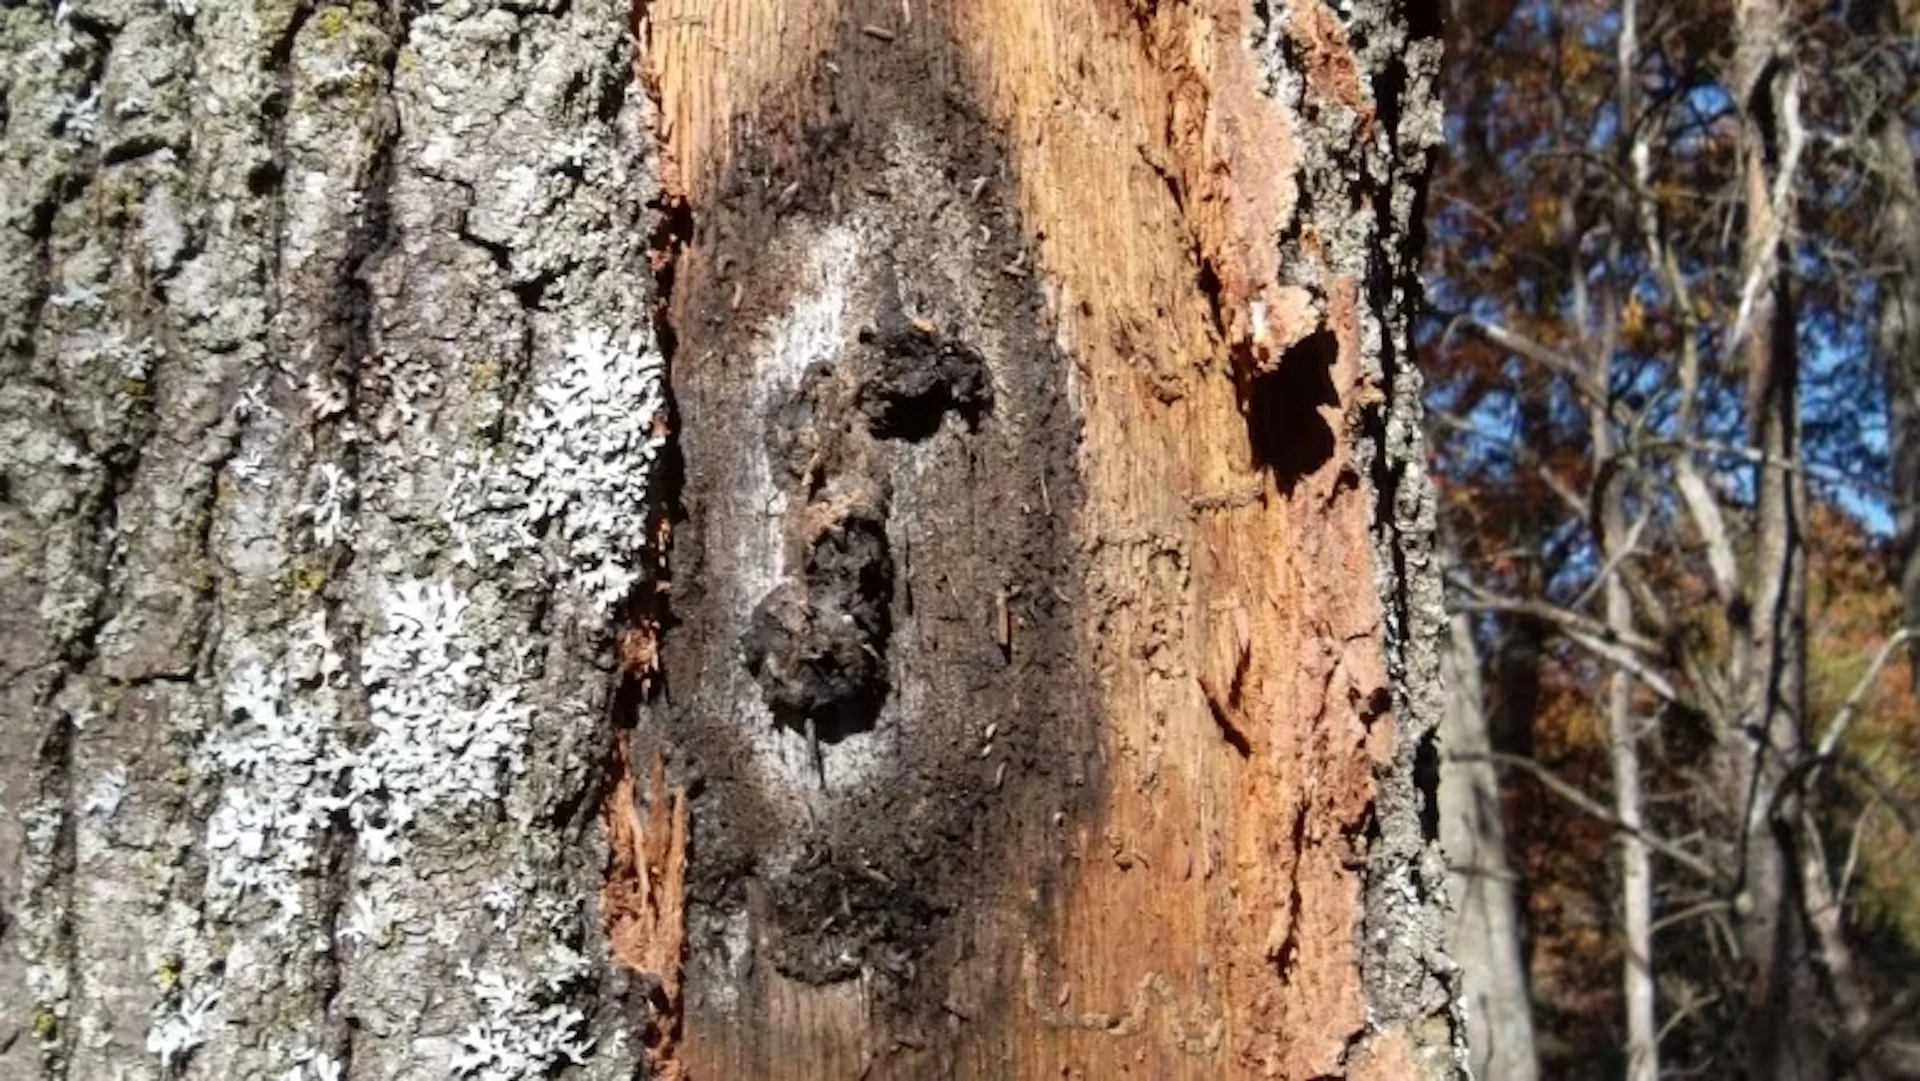 Invasive fungus that kills oak trees now spreading across Ontario